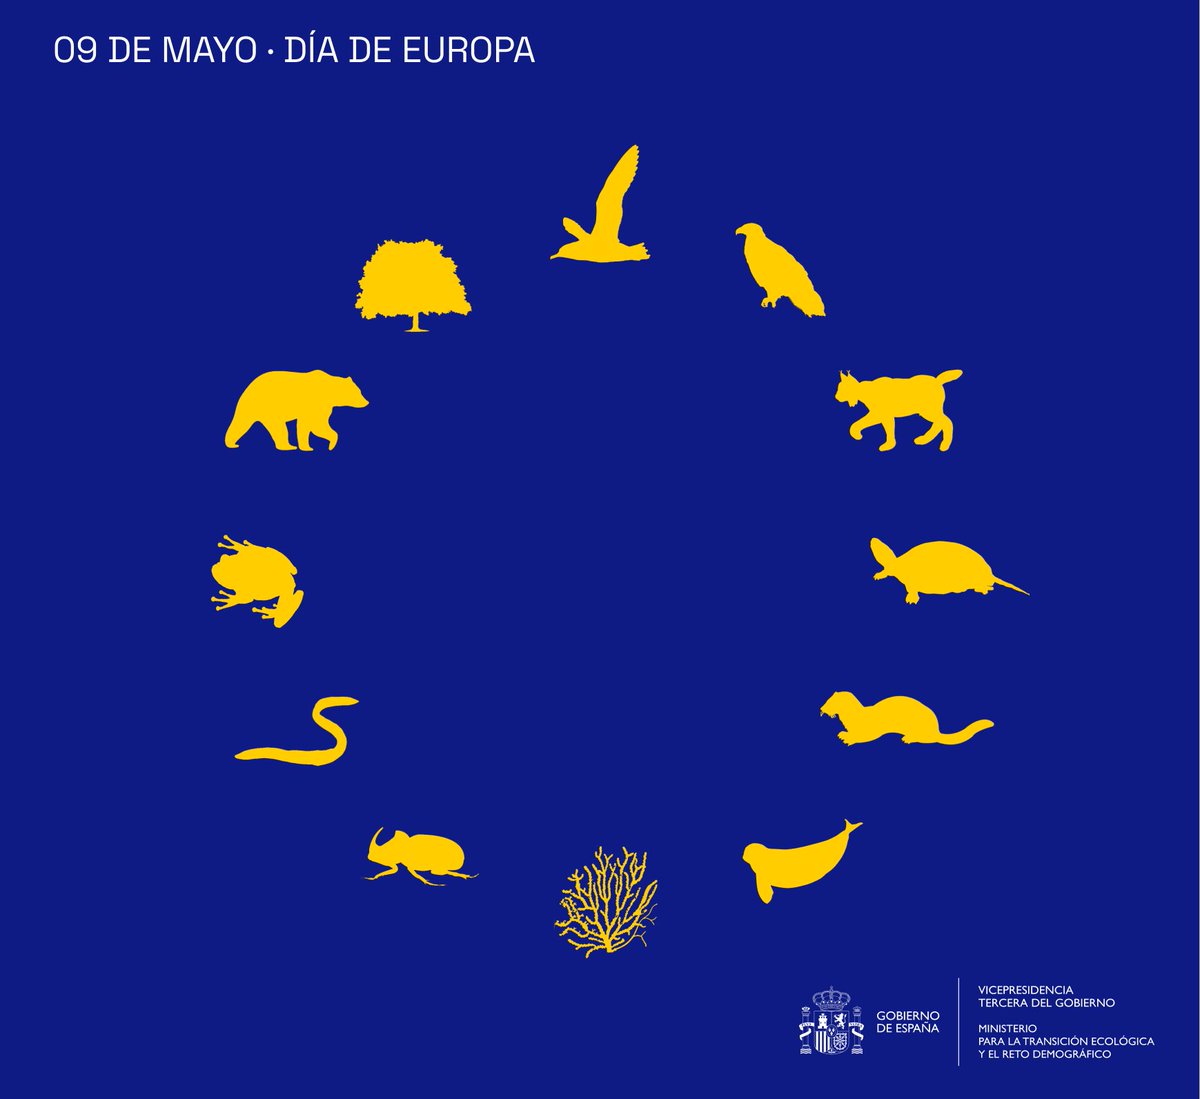 Proteger la biodiversidad, lo tenemos por bandera Biodiversity protection is our flag #DíadeEuropa #EuropeDay 🇪🇺